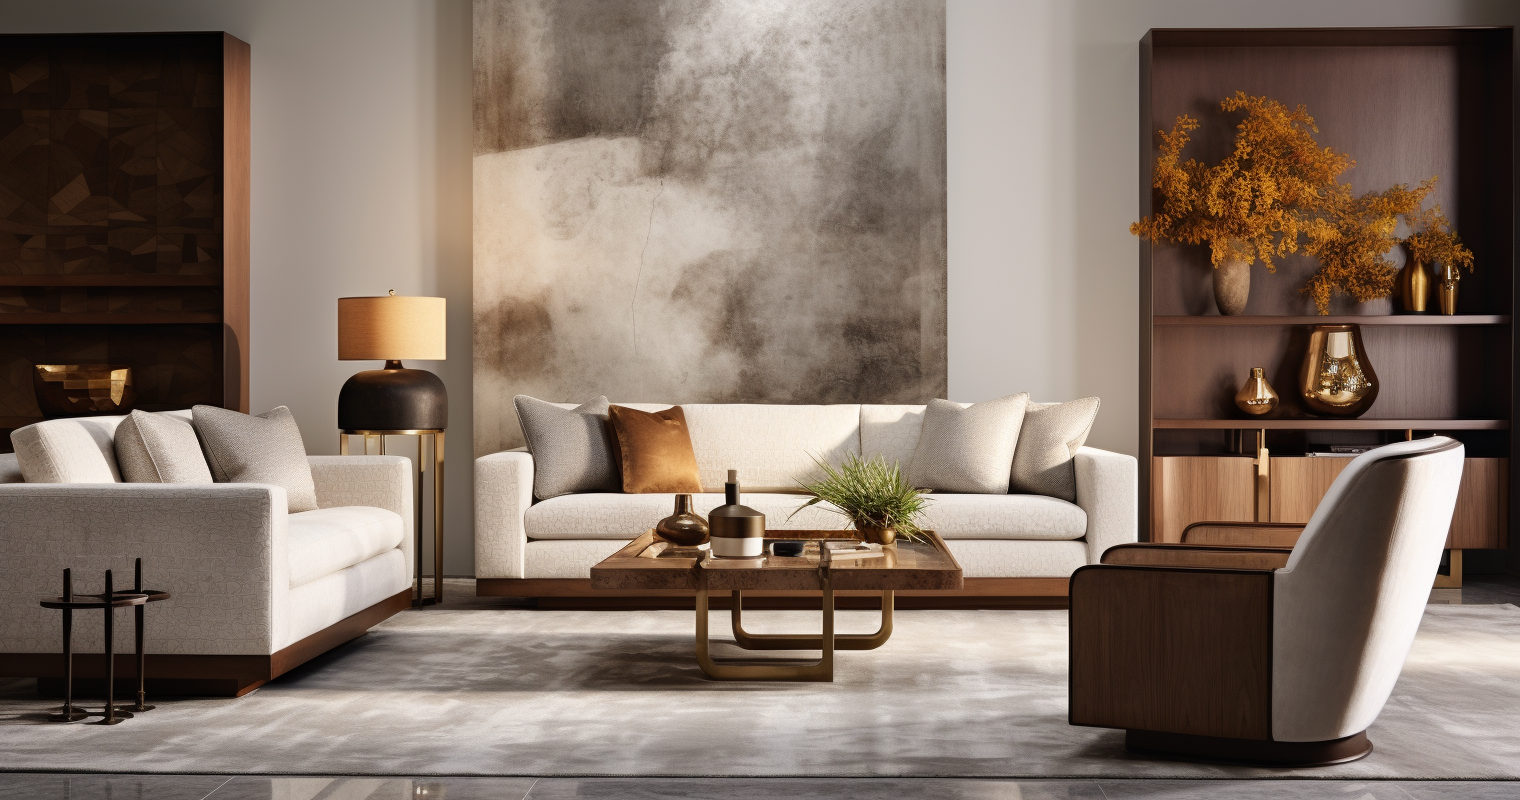 Textured Furniture Arrangement With Gradation